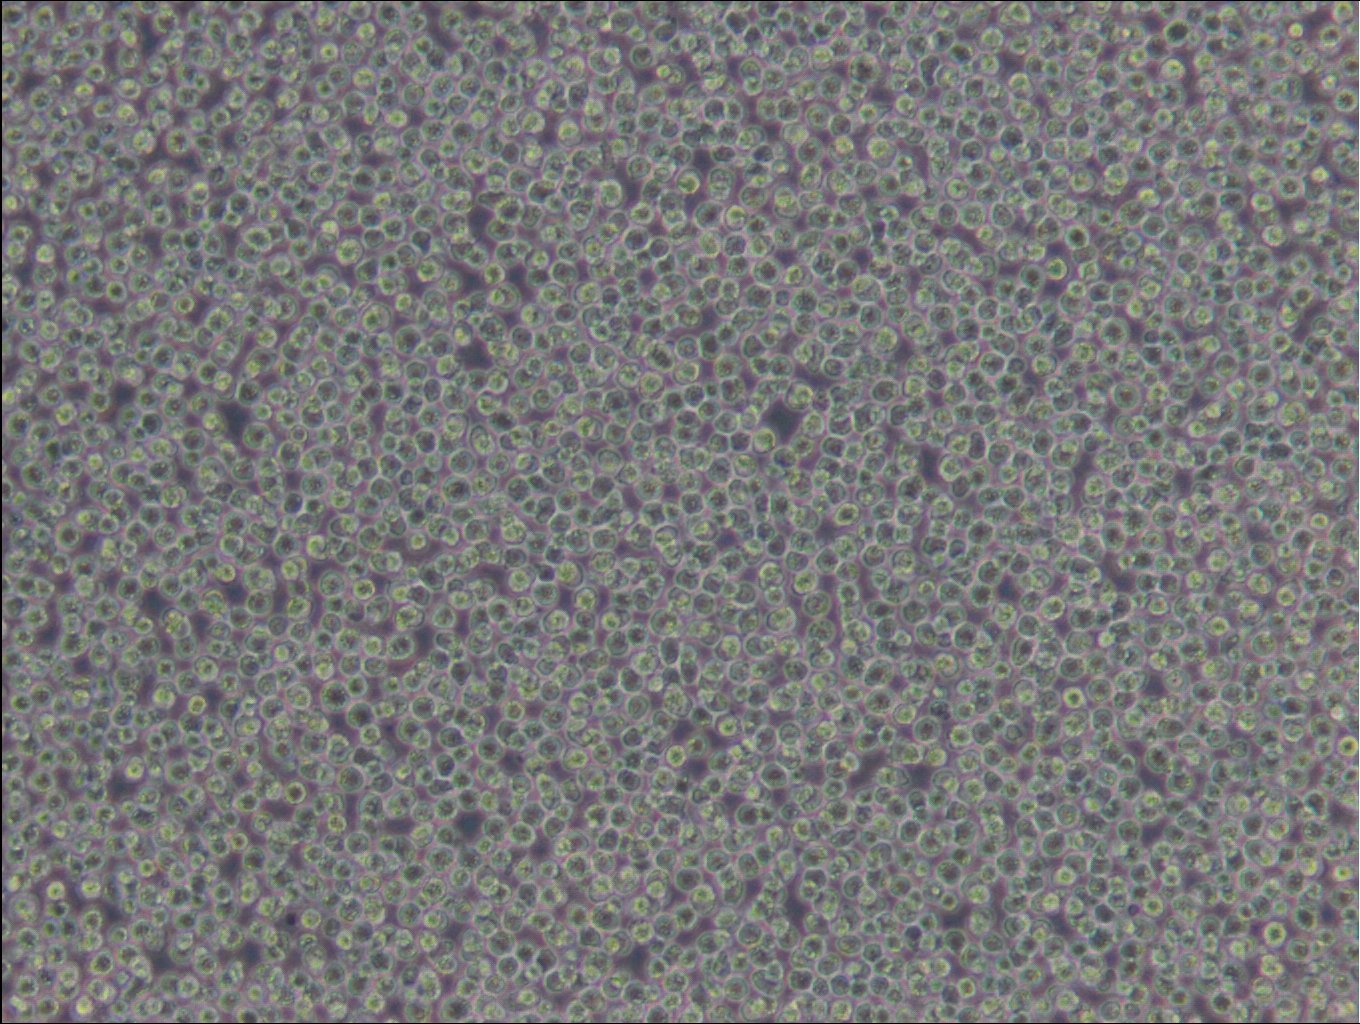 CA46-Zellen